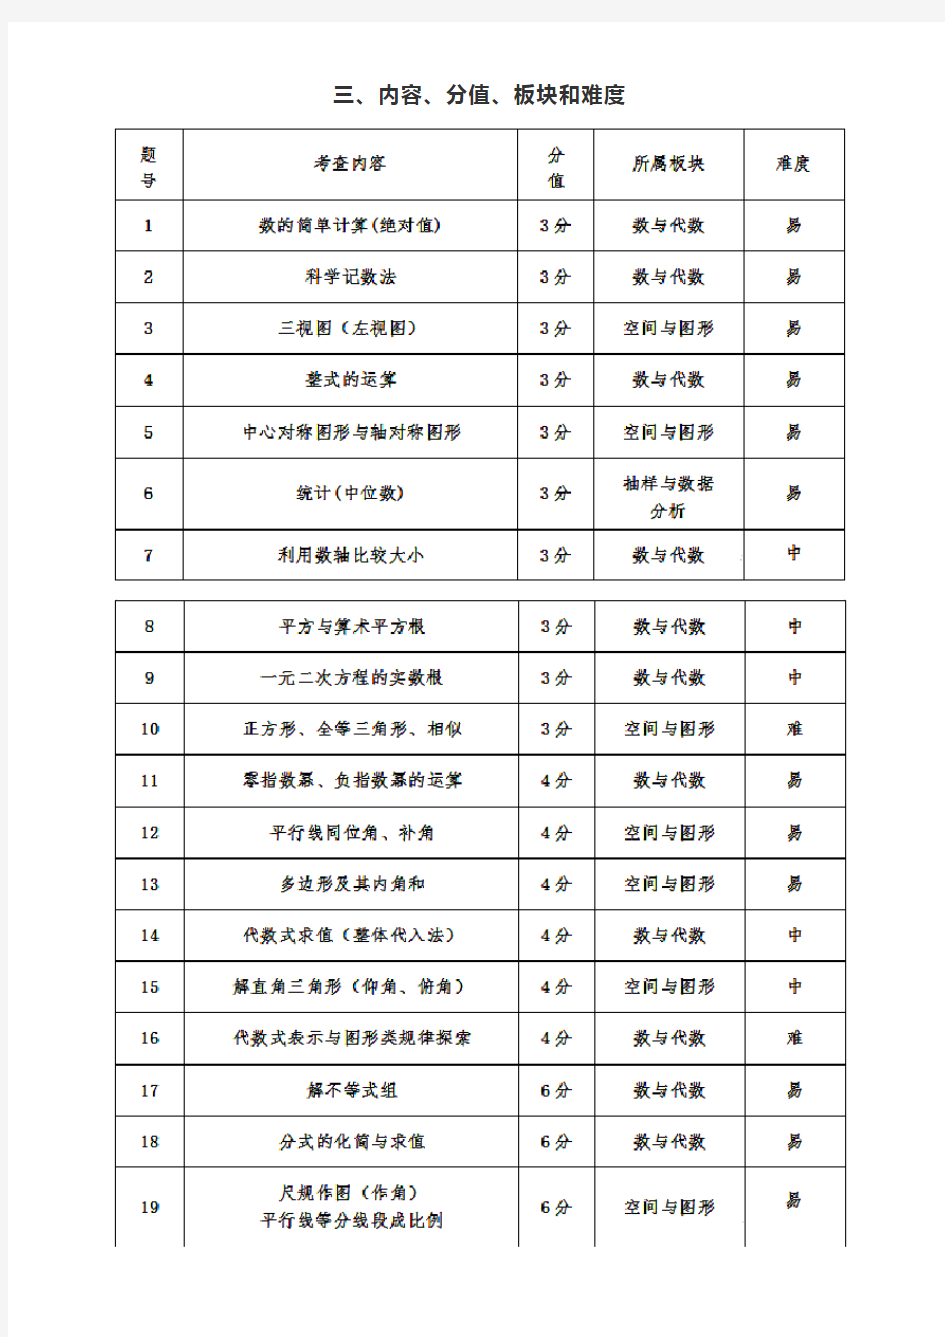 2019年广东省中考数学试题分析和备考教学建议(1)